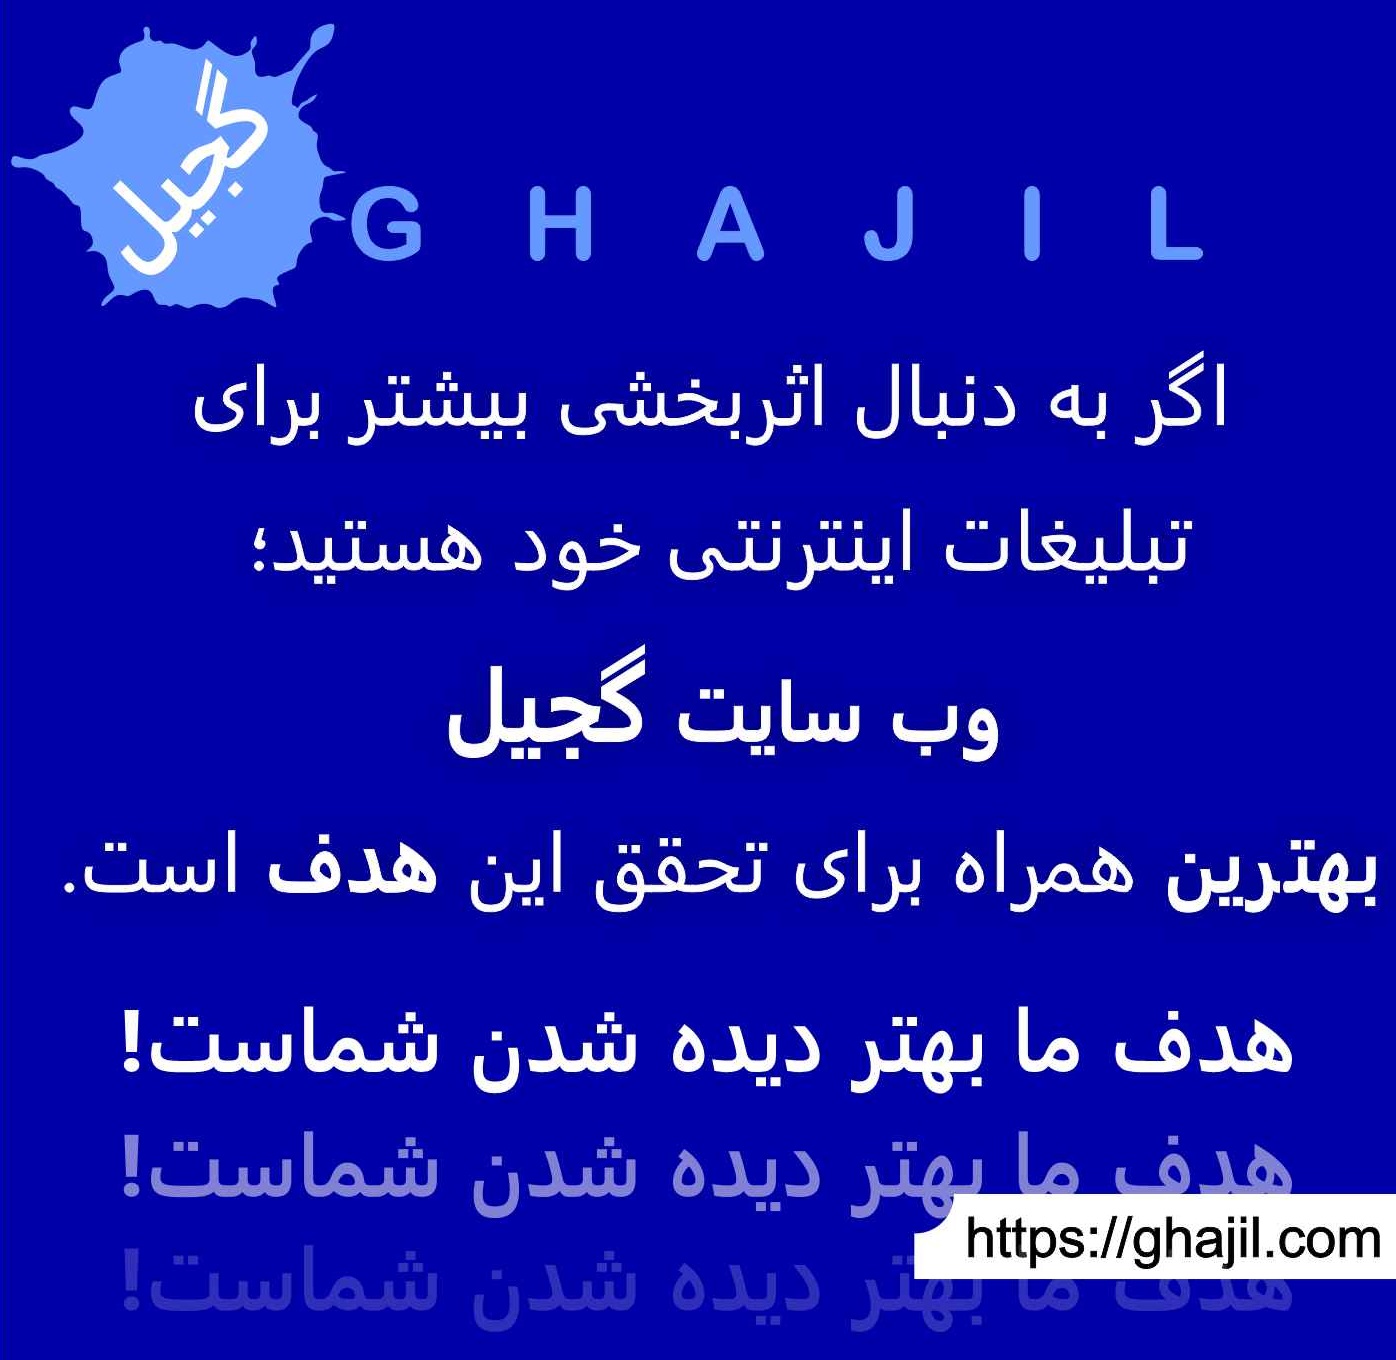 گجیل منبع آگهی های رایگان ایران, آگهی رایگان در گجیل